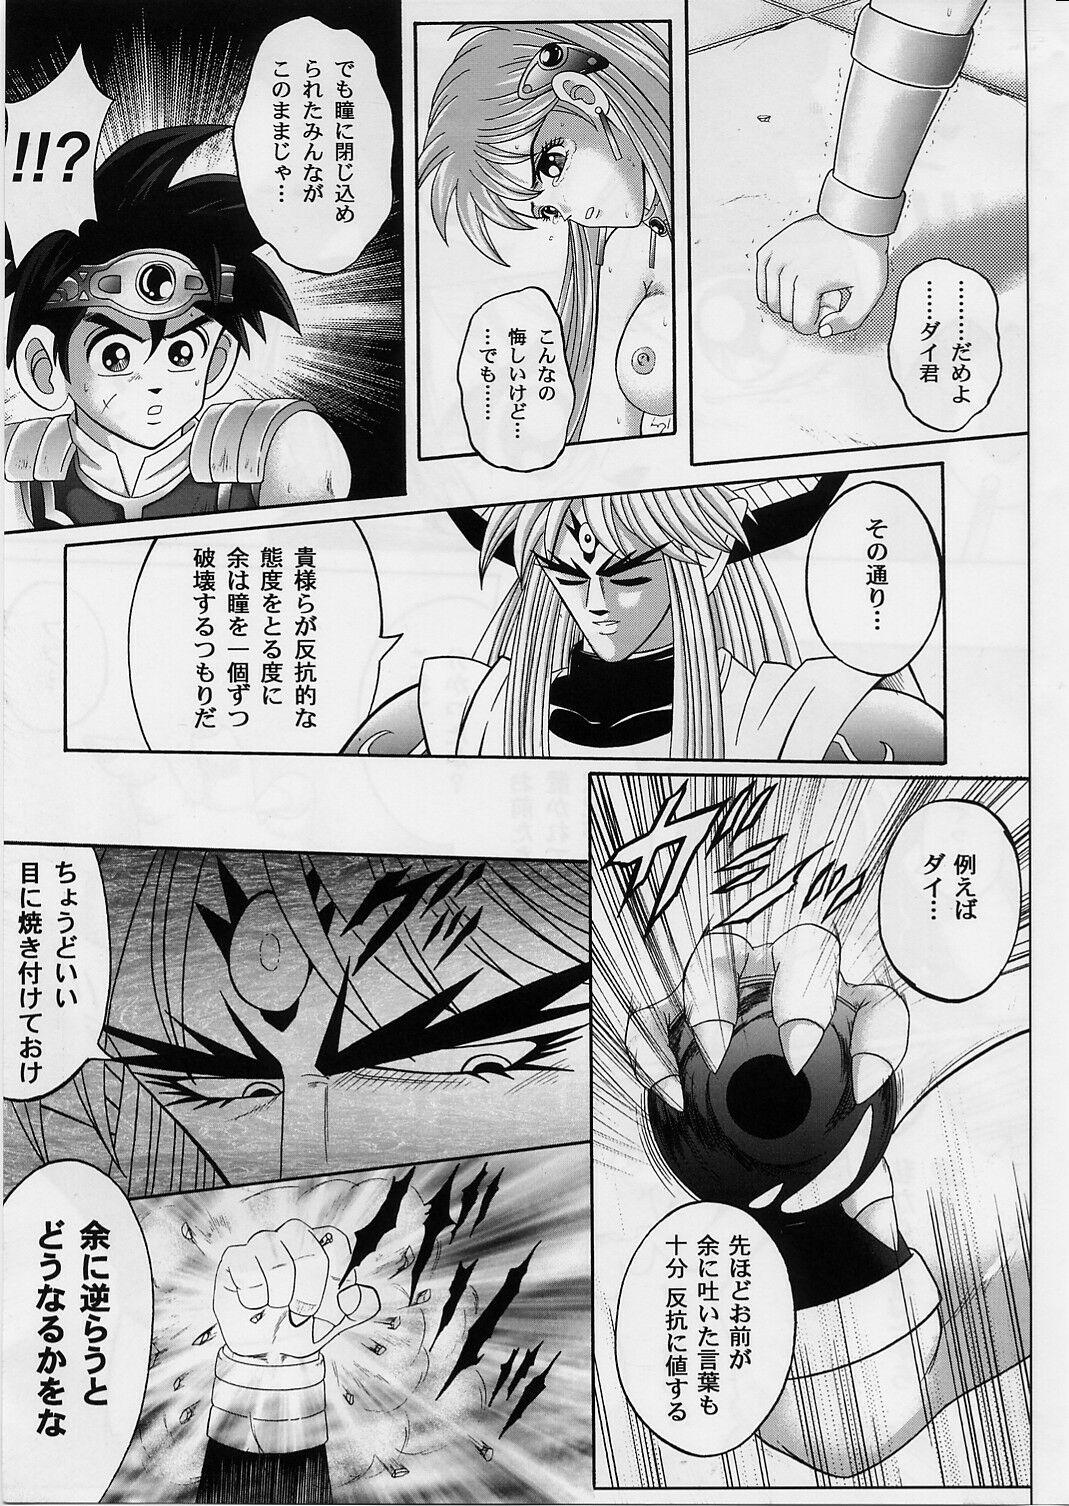 Sis DIME ALLIANCE 2 - Dragon quest dai no daibouken Porn Amateur - Page 8